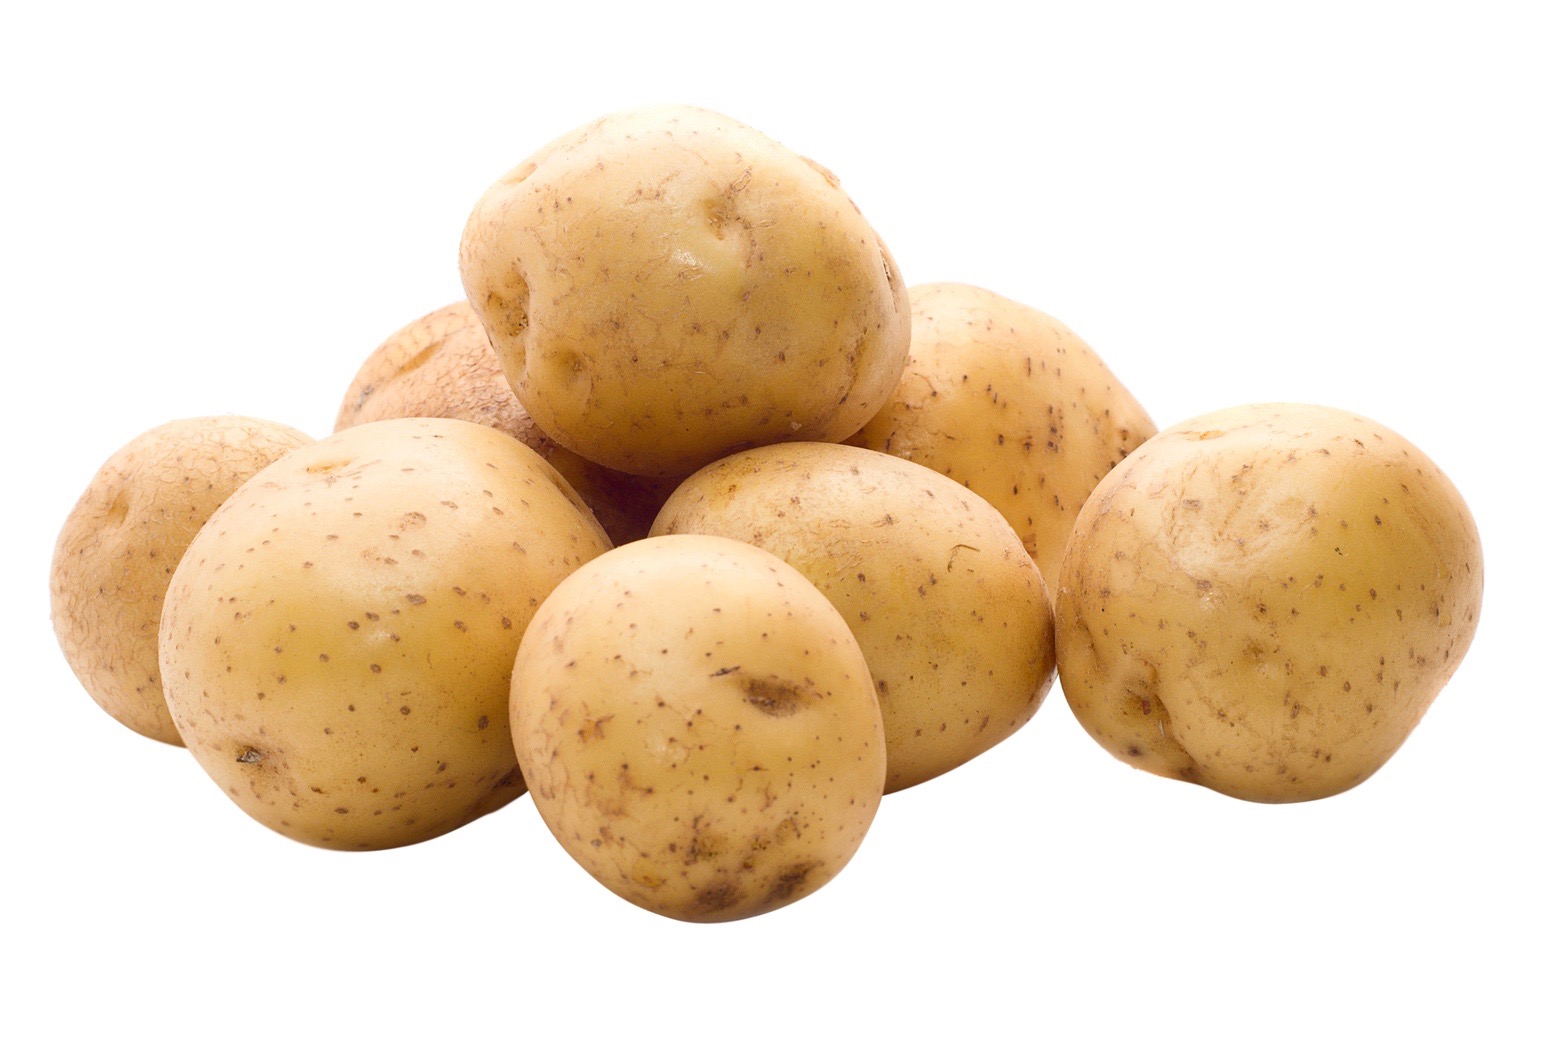 P2320-RMPo Potato - polar pesticides, glycoalkaloids